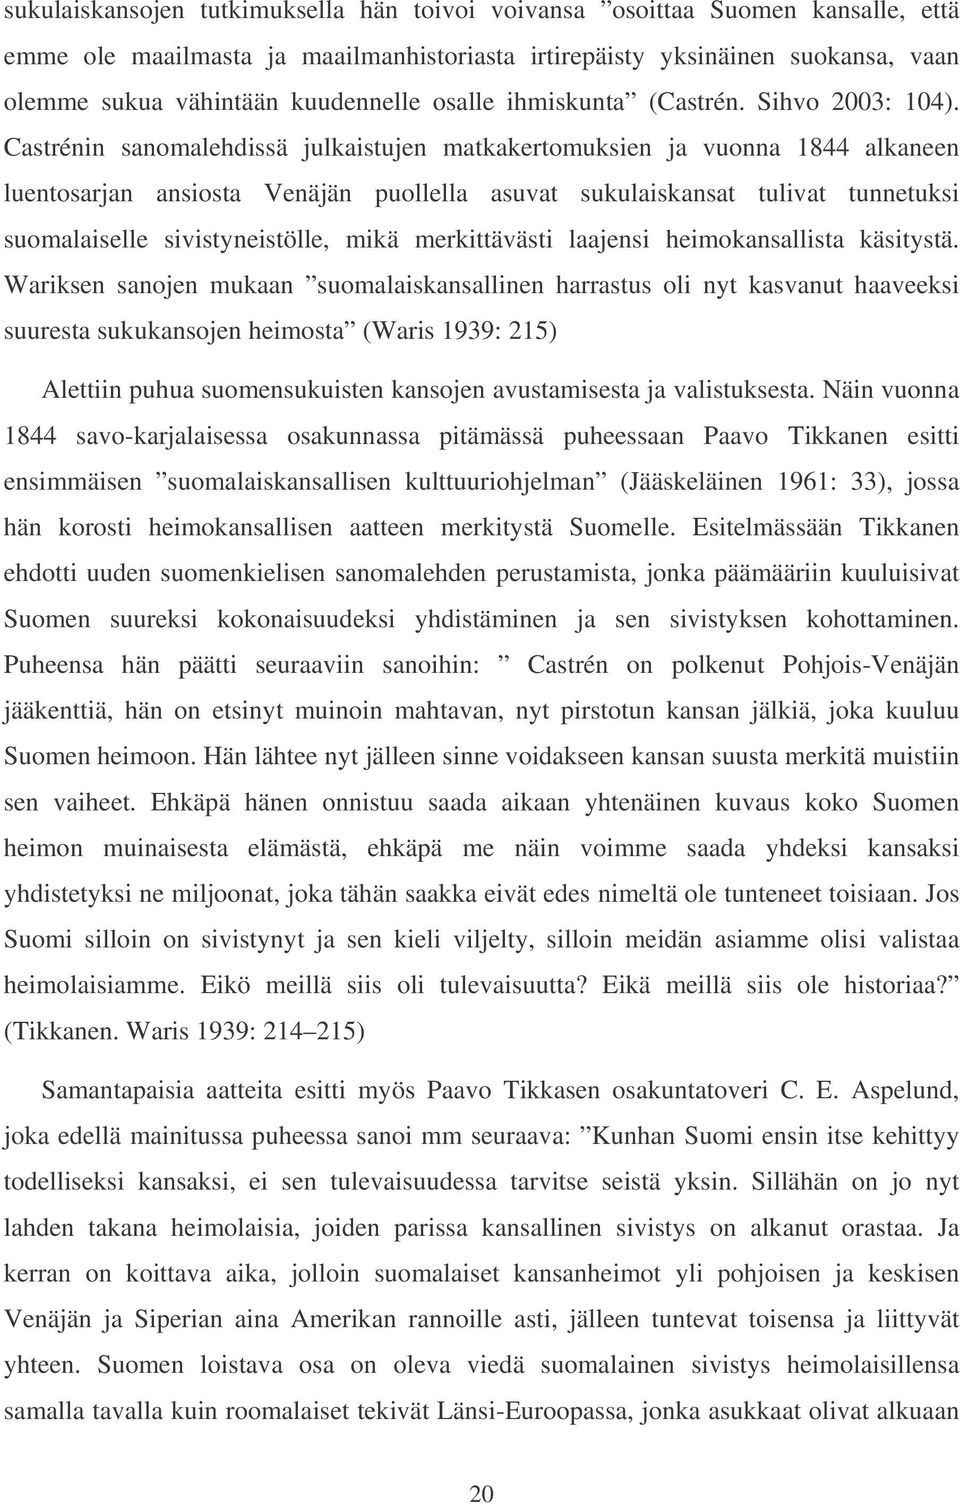 Castrénin sanomalehdissä julkaistujen matkakertomuksien ja vuonna 1844 alkaneen luentosarjan ansiosta Venäjän puollella asuvat sukulaiskansat tulivat tunnetuksi suomalaiselle sivistyneistölle, mikä